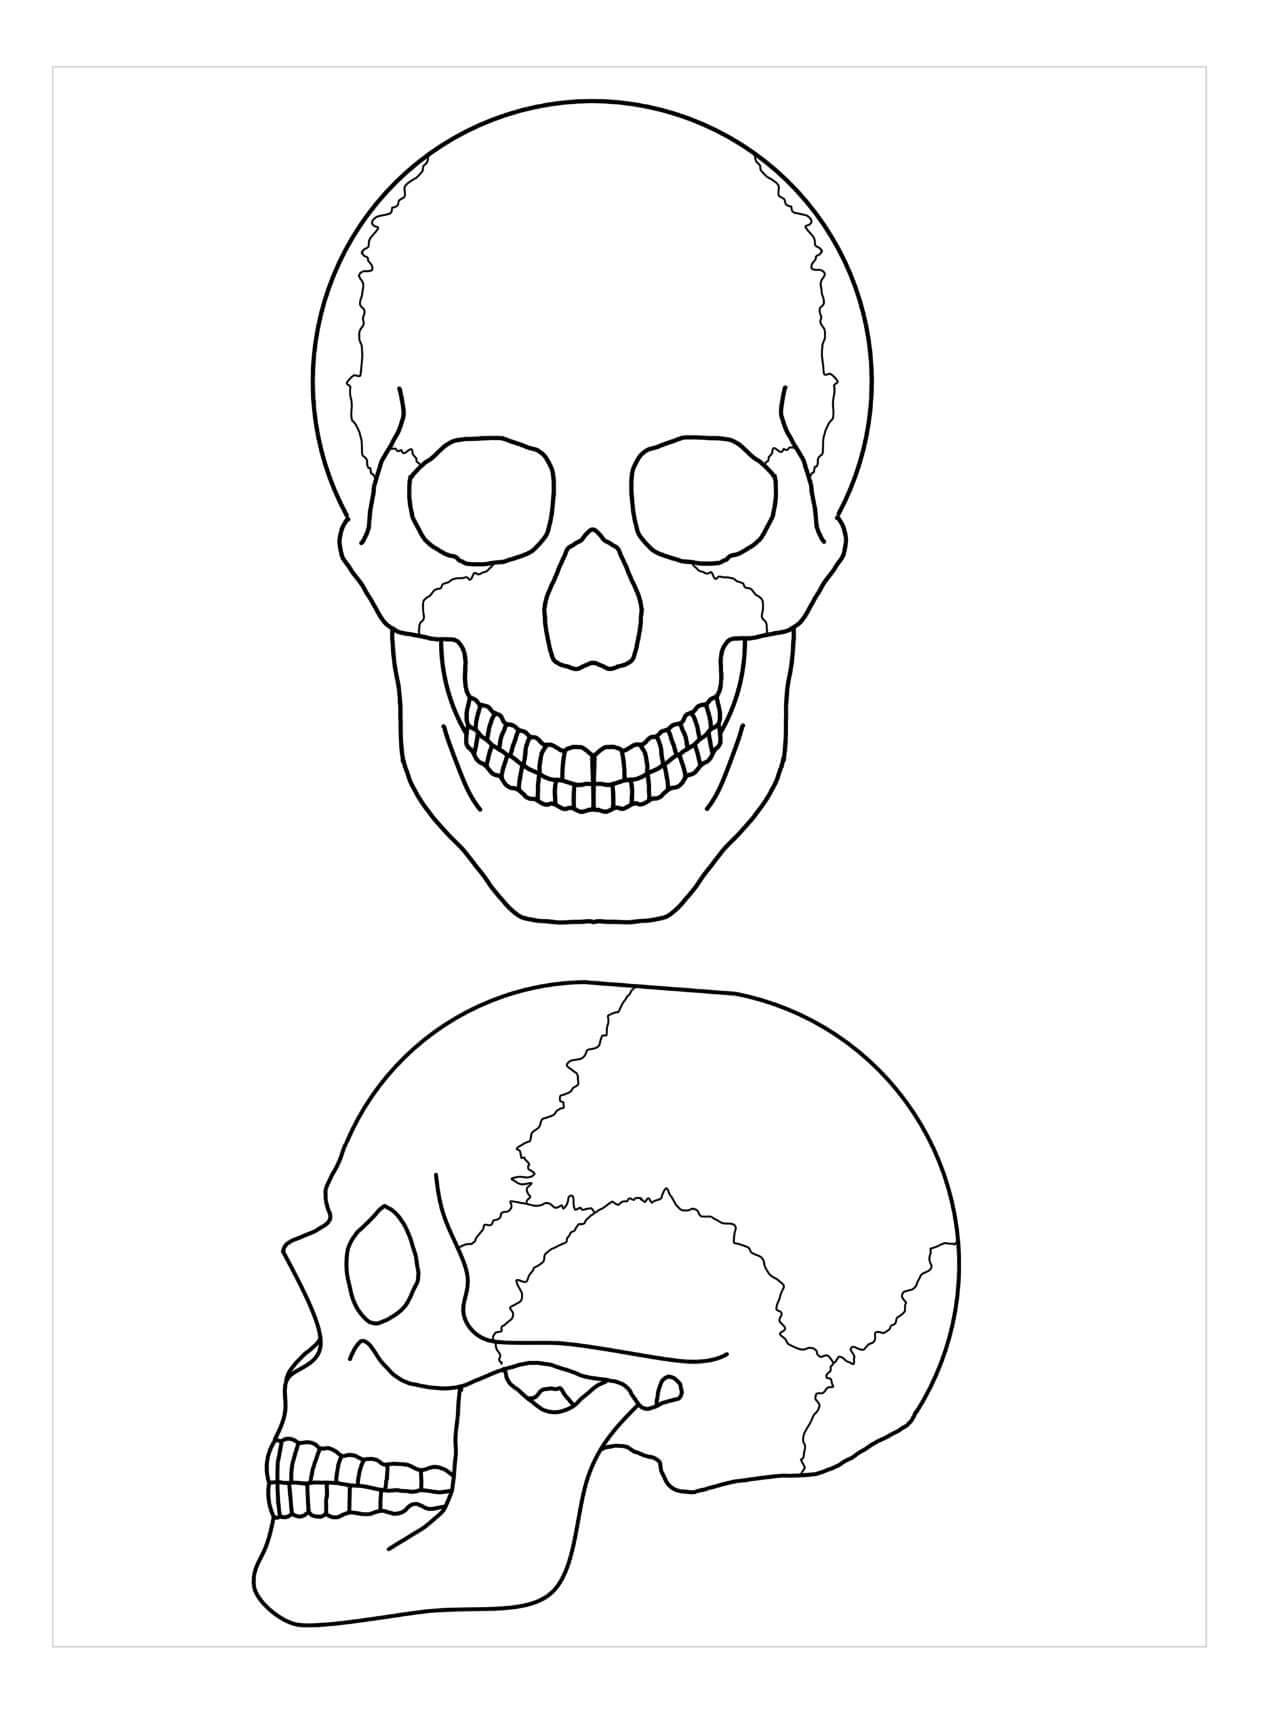 두 개의 두개골 해부학